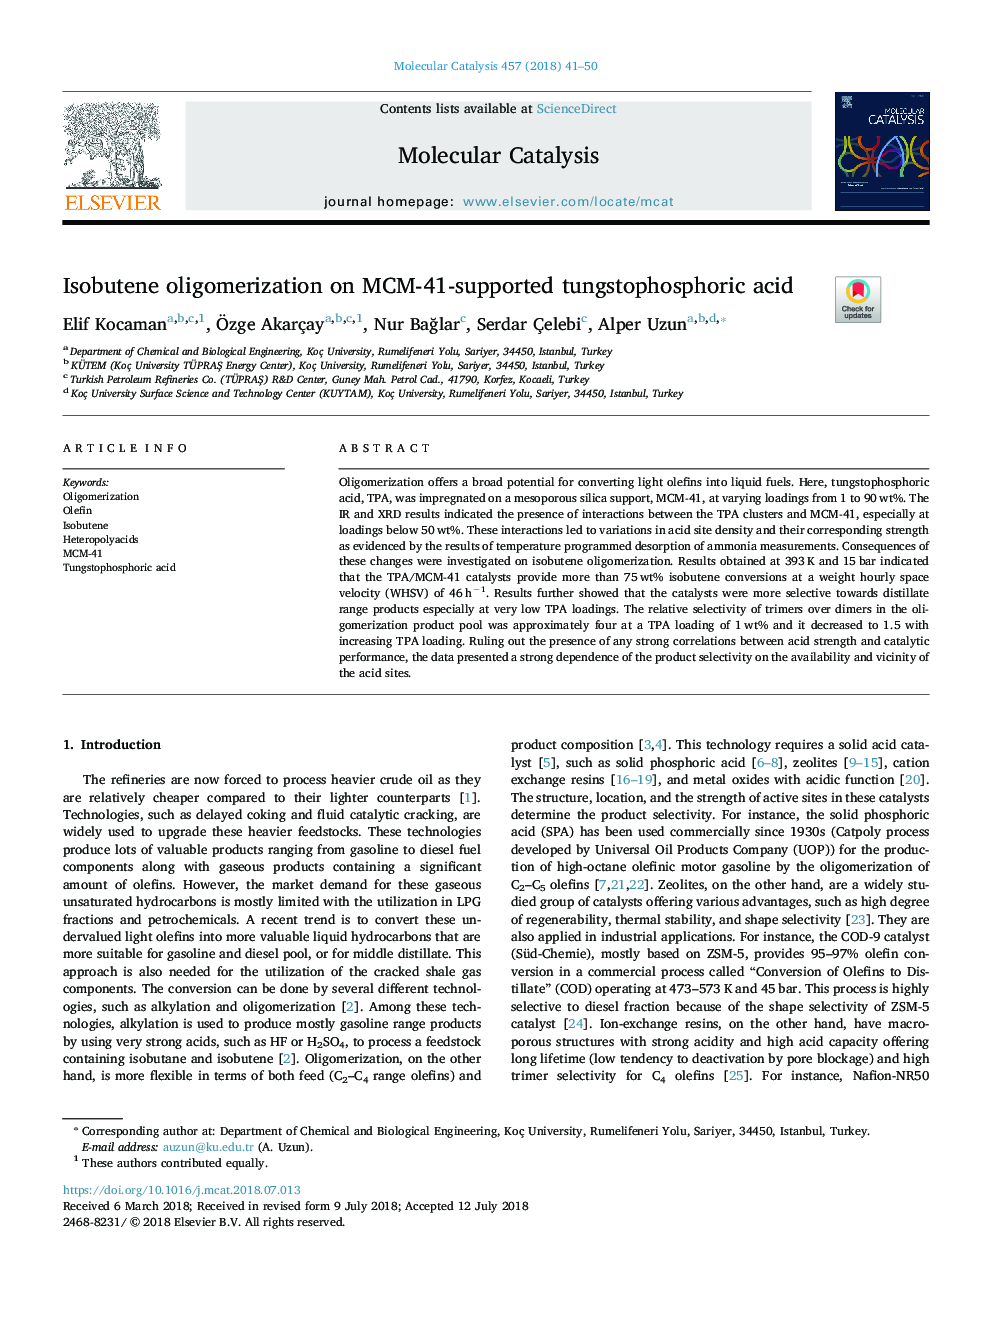 Isobutene oligomerization on MCM-41-supported tungstophosphoric acid